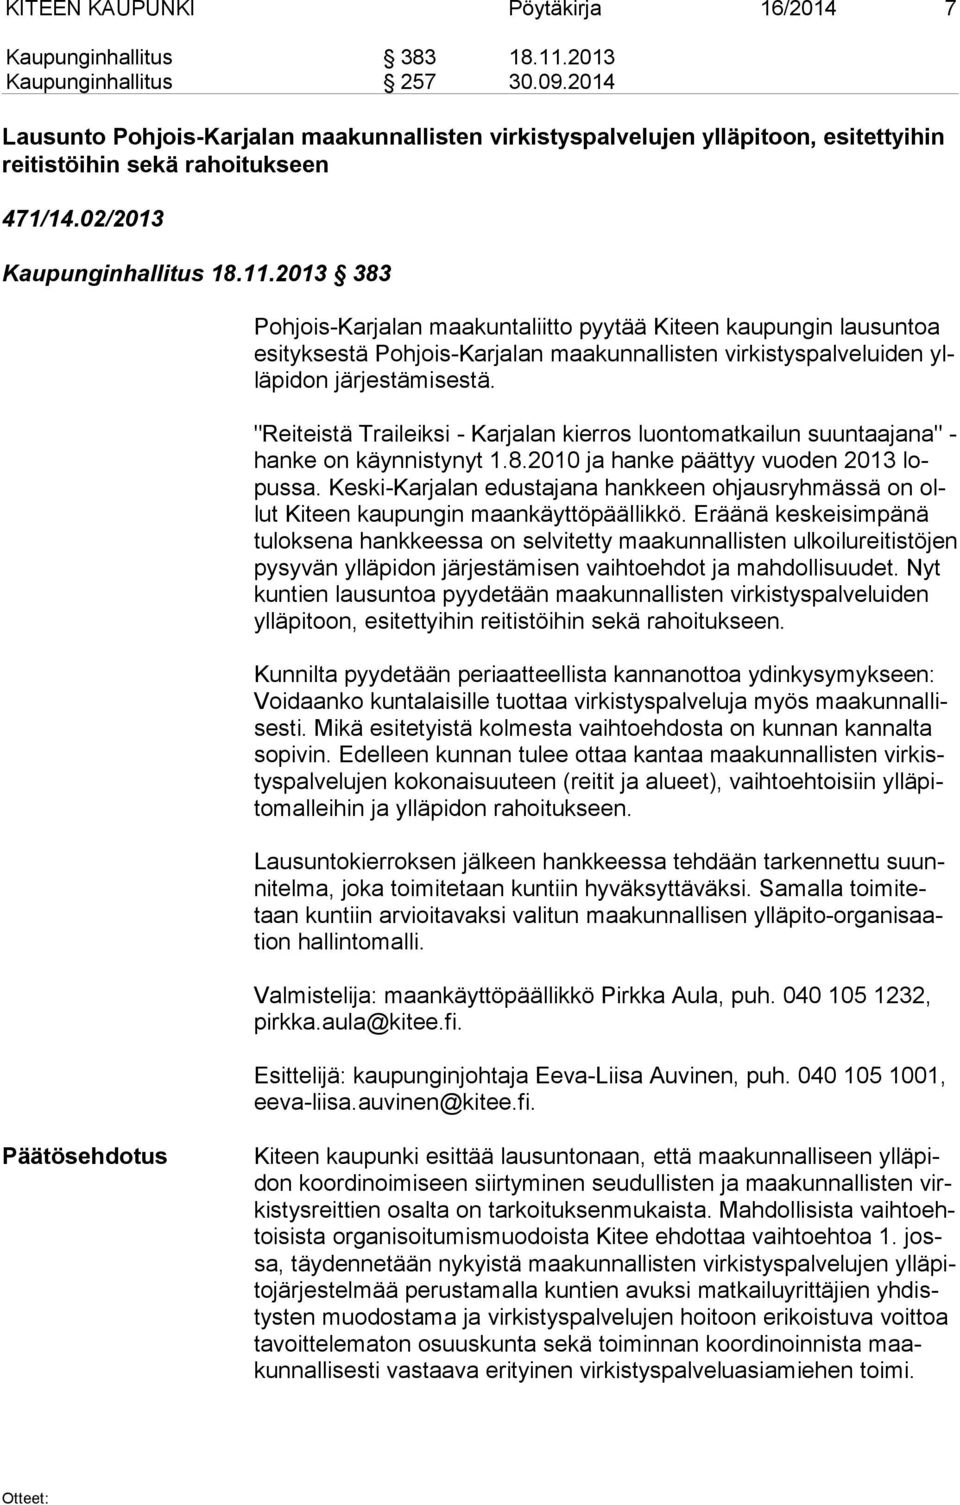 2013 383 Pohjois-Karjalan maakuntaliitto pyytää Kiteen kaupungin lausuntoa esi tyk ses tä Pohjois-Karjalan maakunnallisten virkistyspalveluiden yllä pi don järjestämisestä.